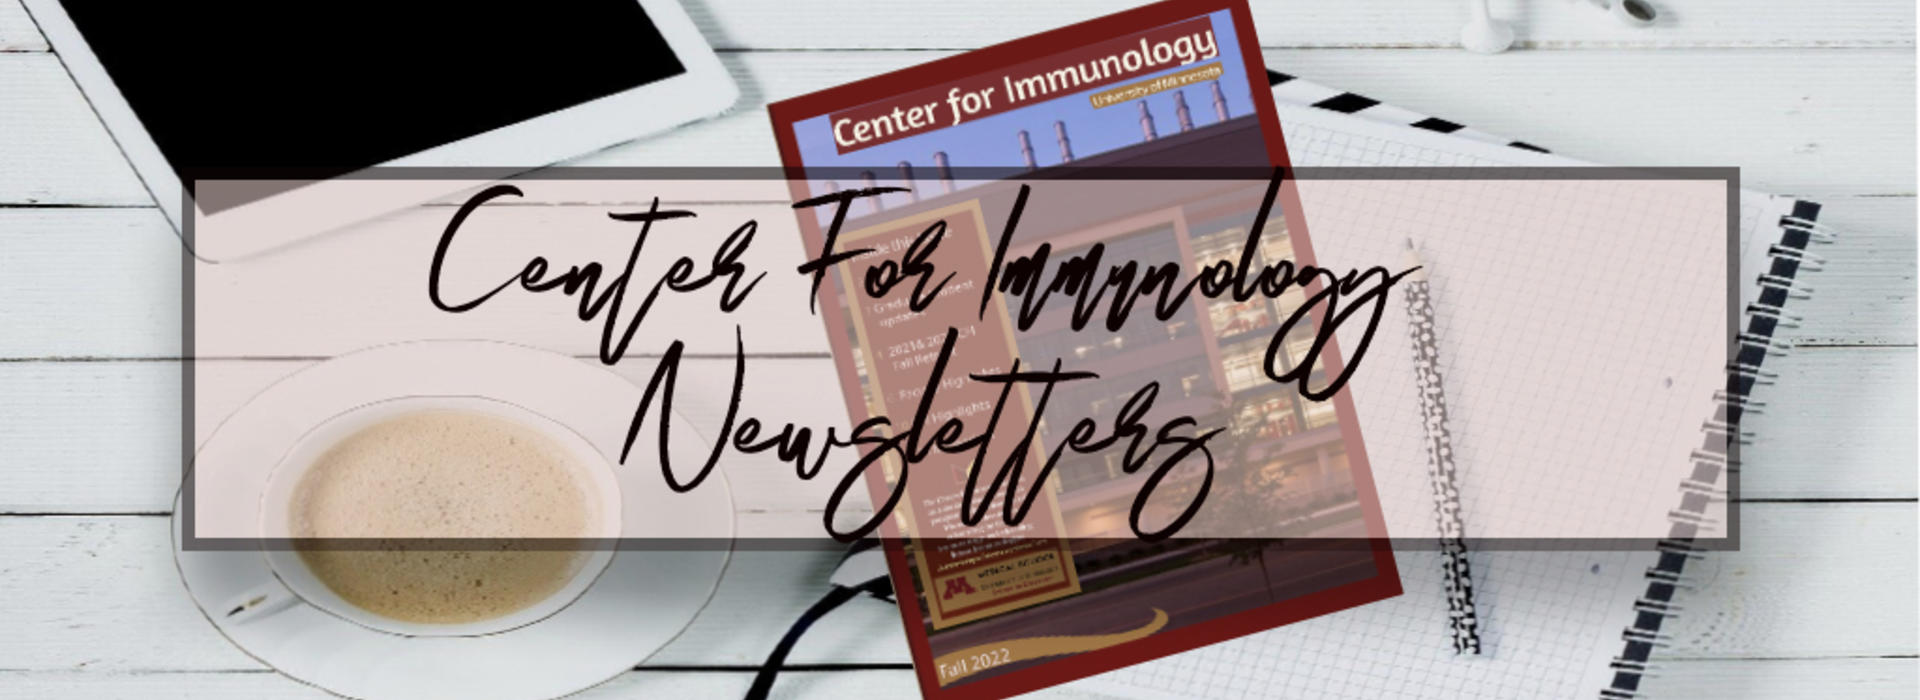 immunology chi newsletter header